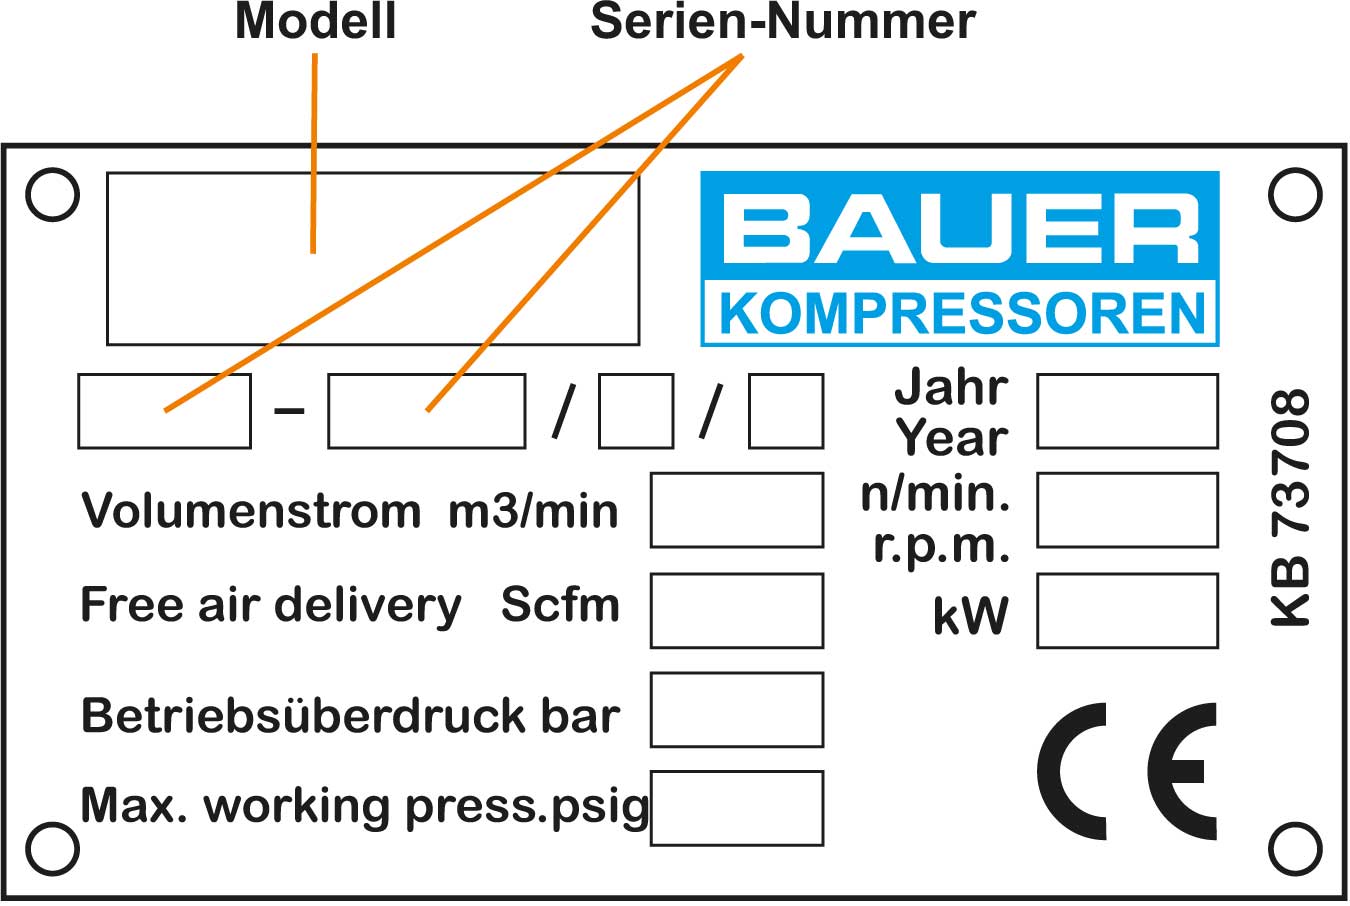 Elbe-Airtec Kompressorenservice, Typenschild Bauer Kompressoren